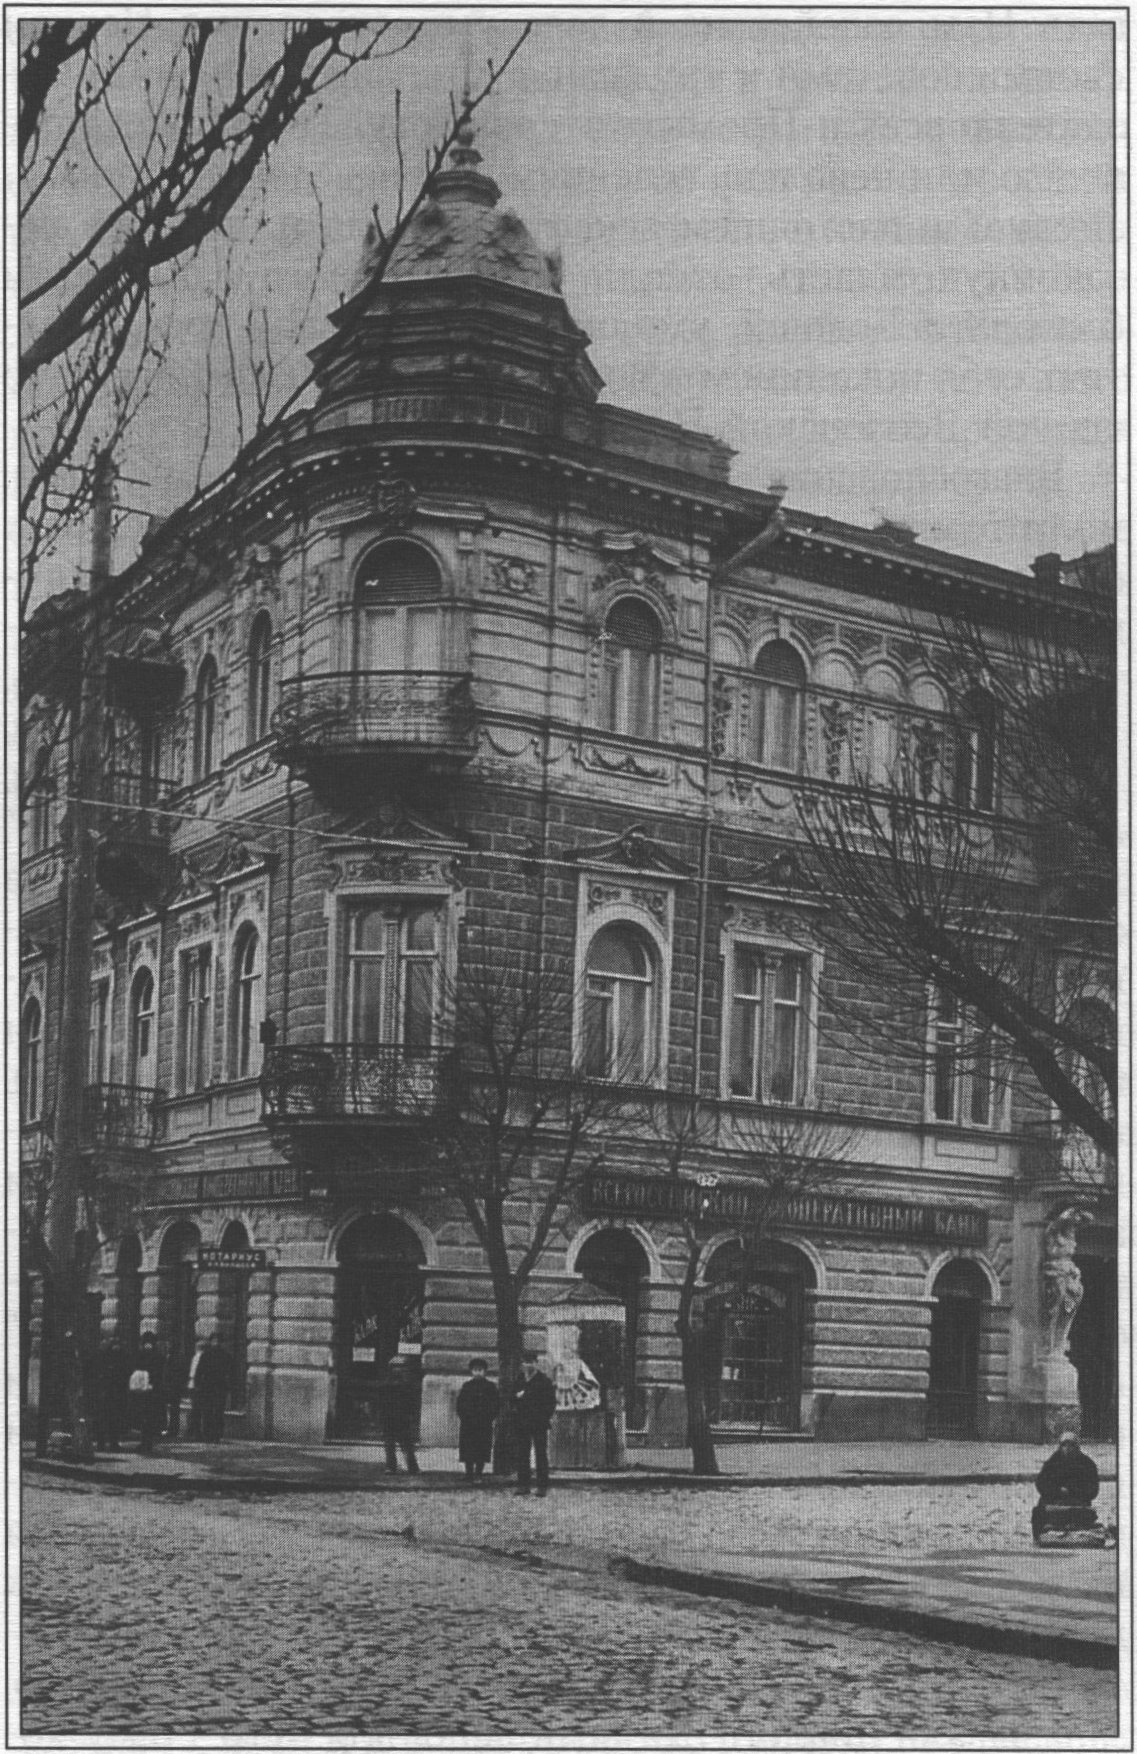 Итальянская улица. Банк. Фотооткрытка 1920-х годов